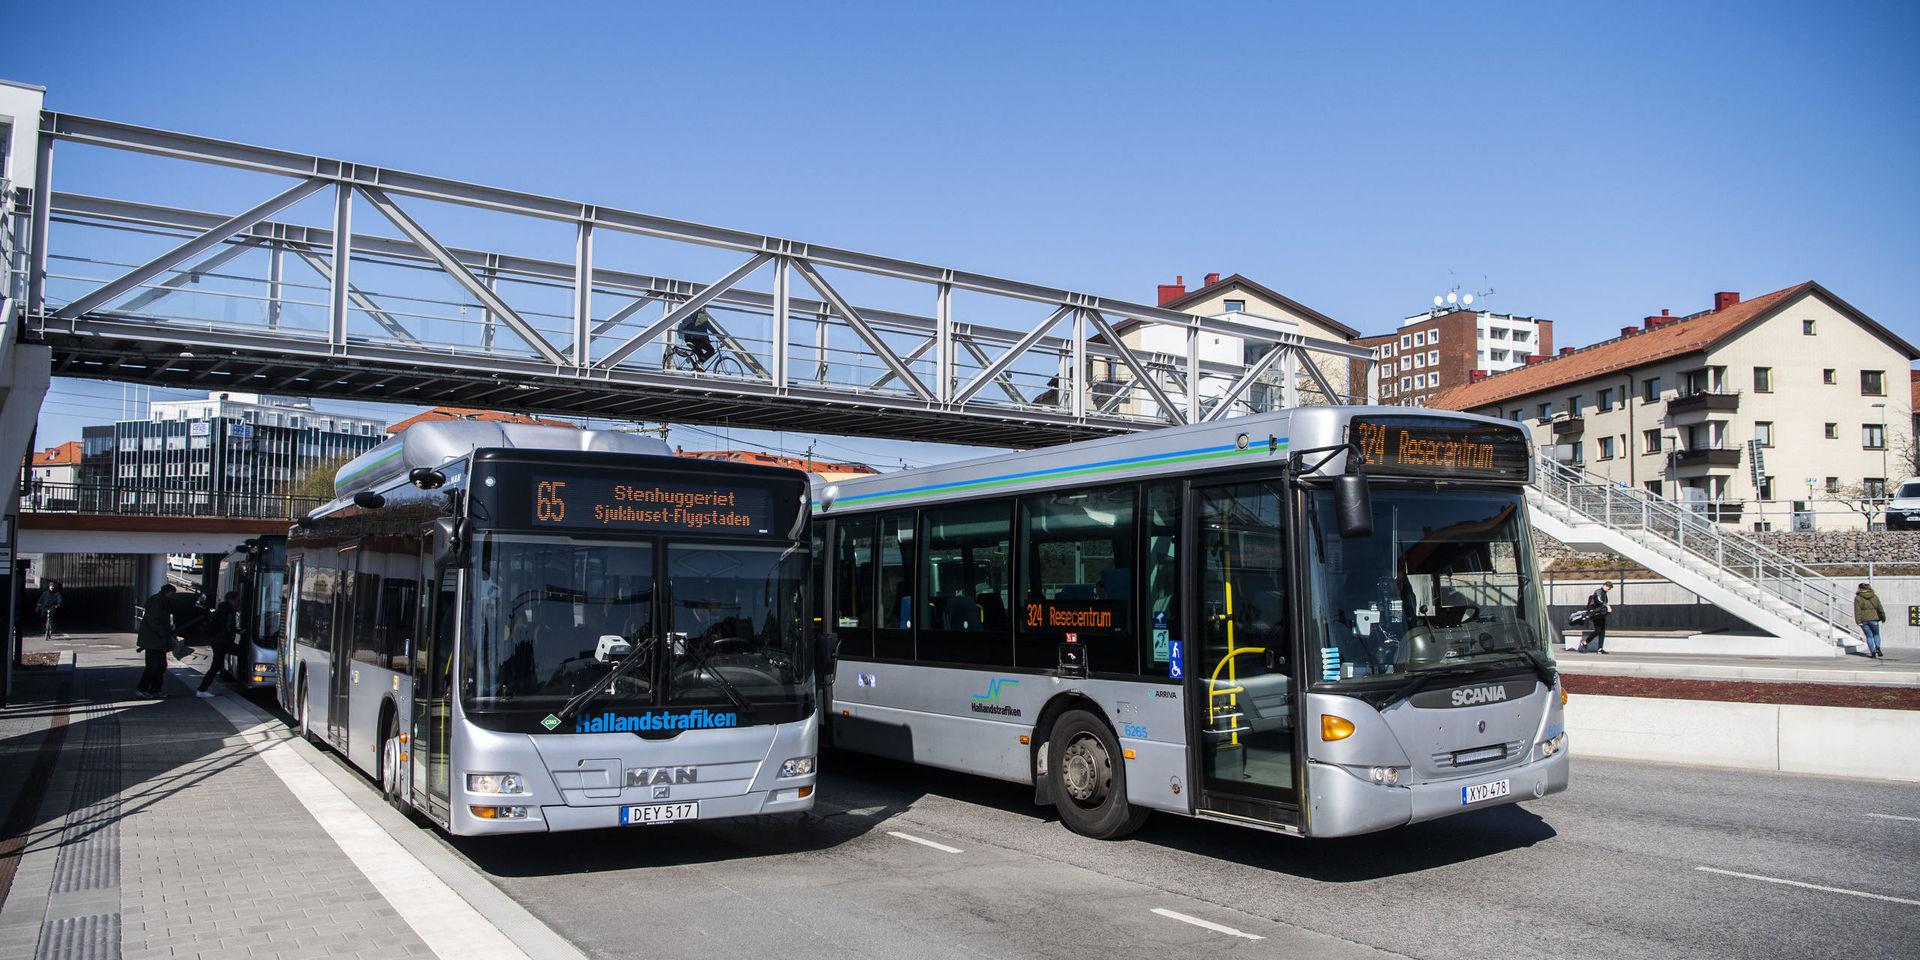 Hallandstrafikens bussar är anpassade efter det totala resandebehov som finns och efter hur infrastrukturen ser ut, skriver Peter Gyllander, presschef.